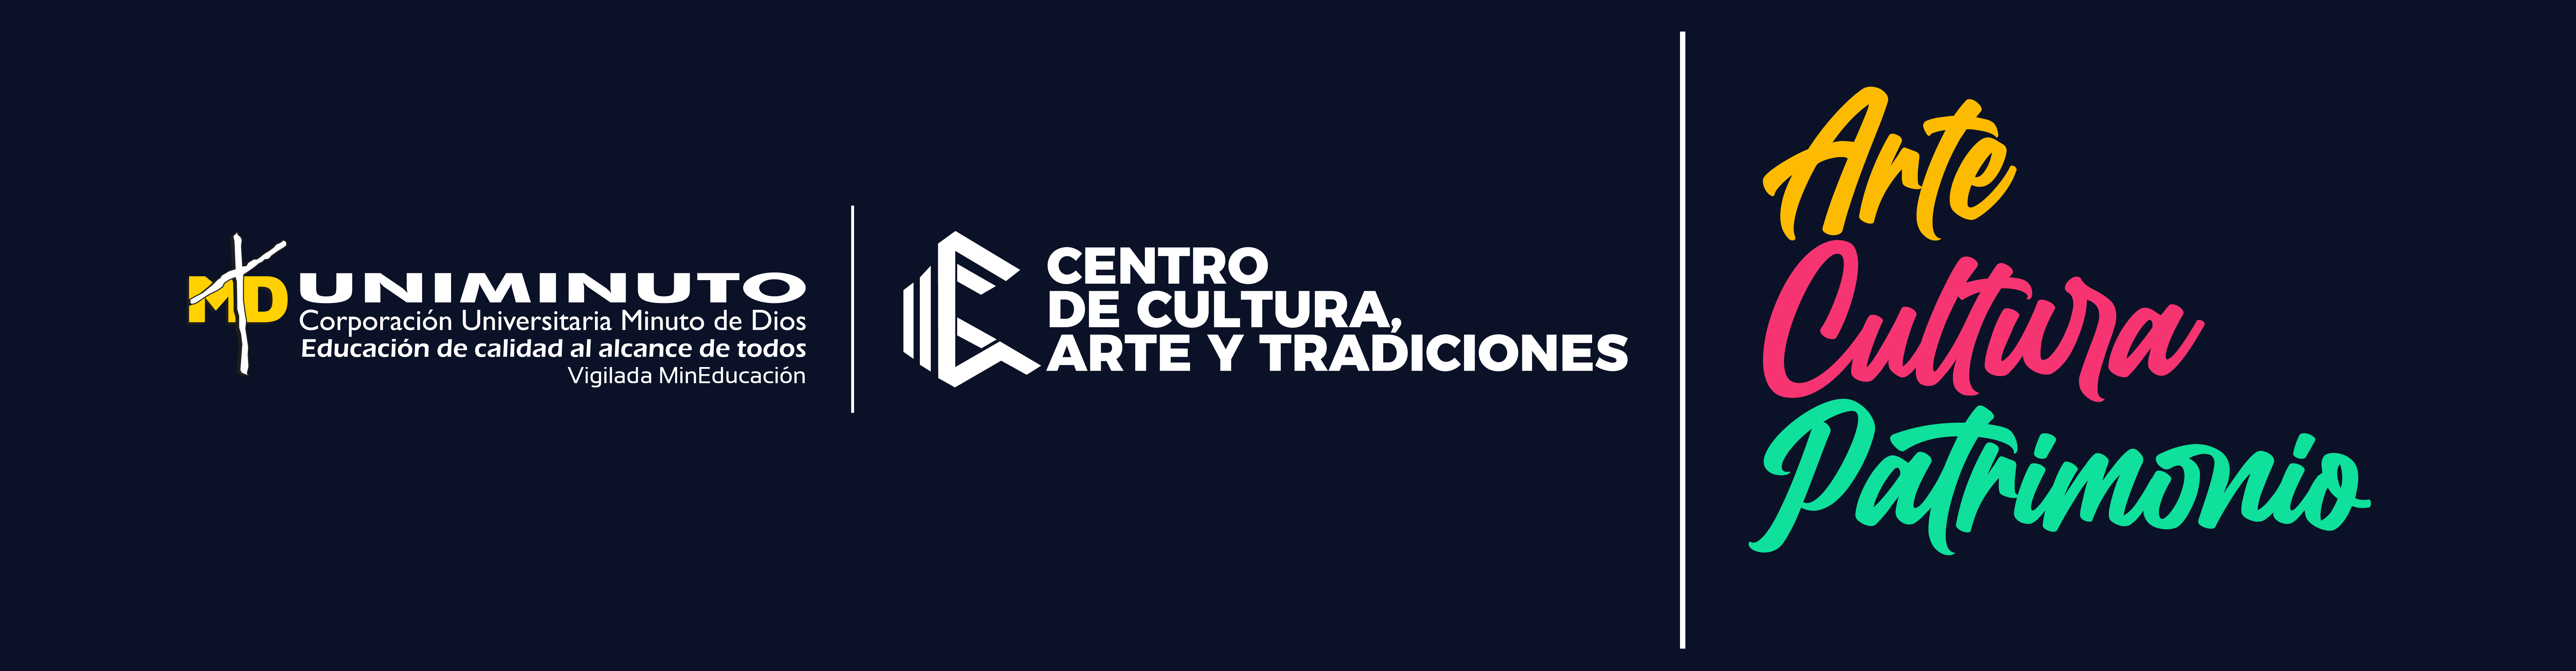 Banner Centro de Cultura, Arte y Tradiciones